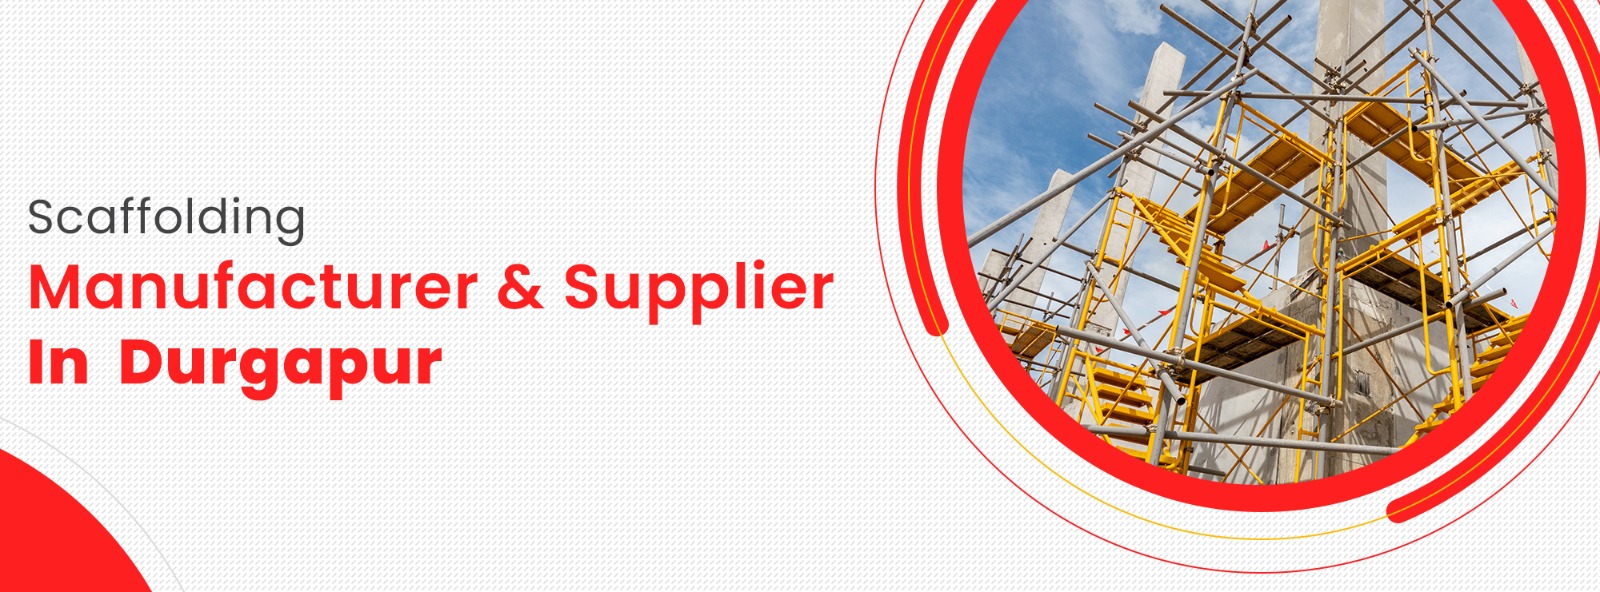 Scaffolding Supplier In Durgapur